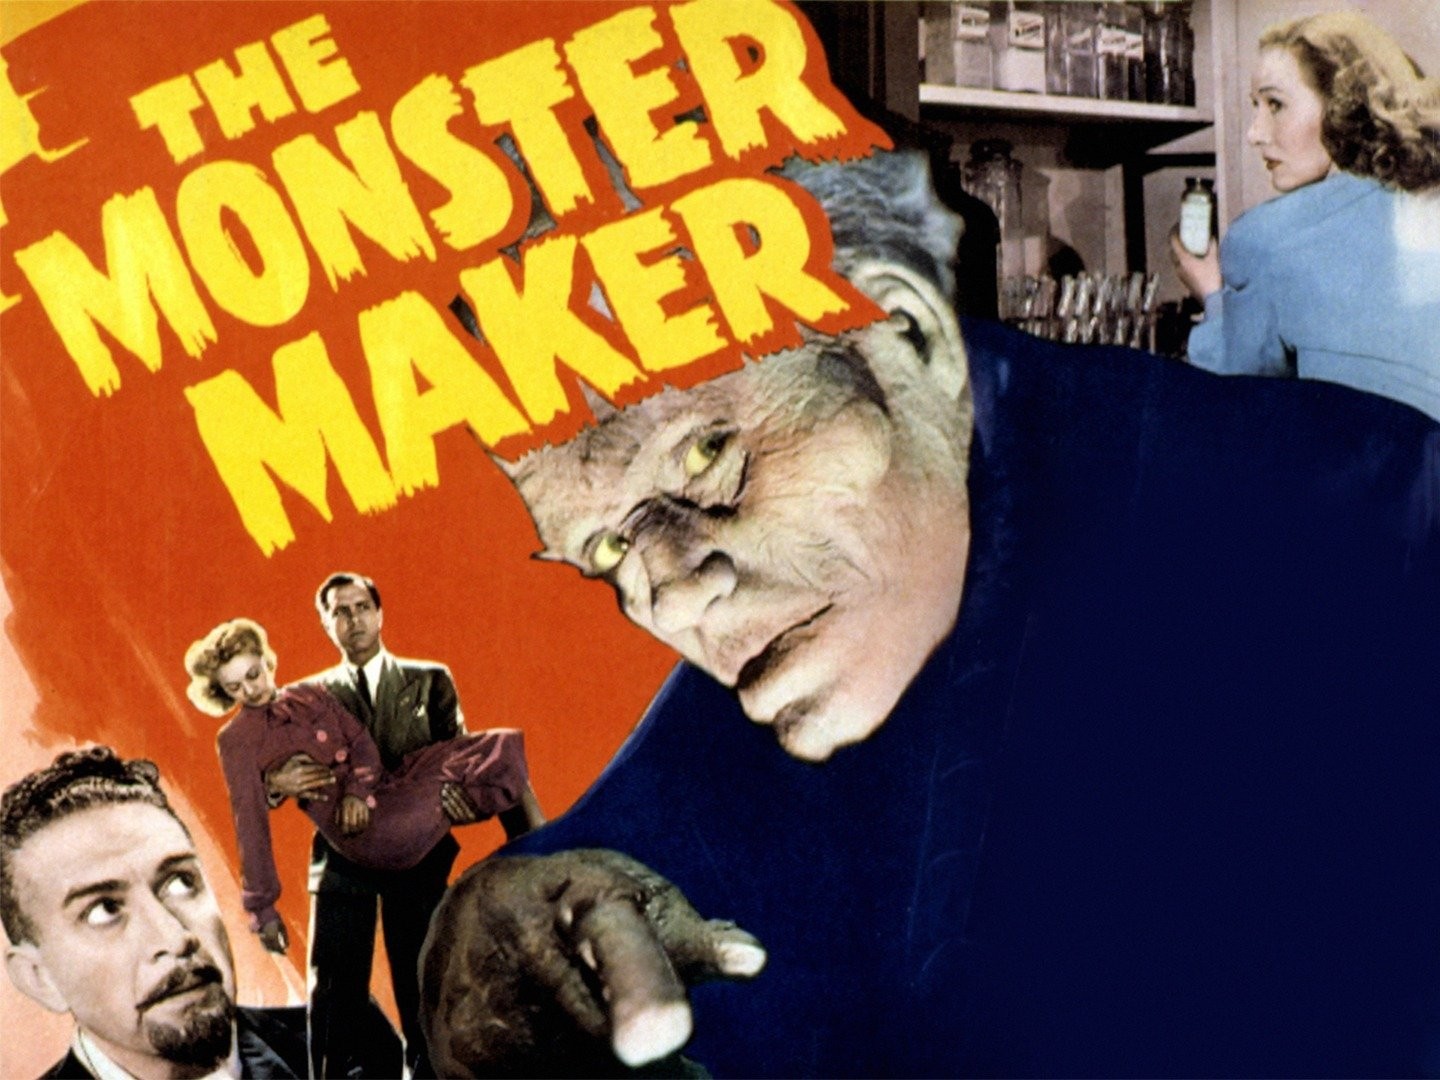 The Monster Maker - Wikipedia